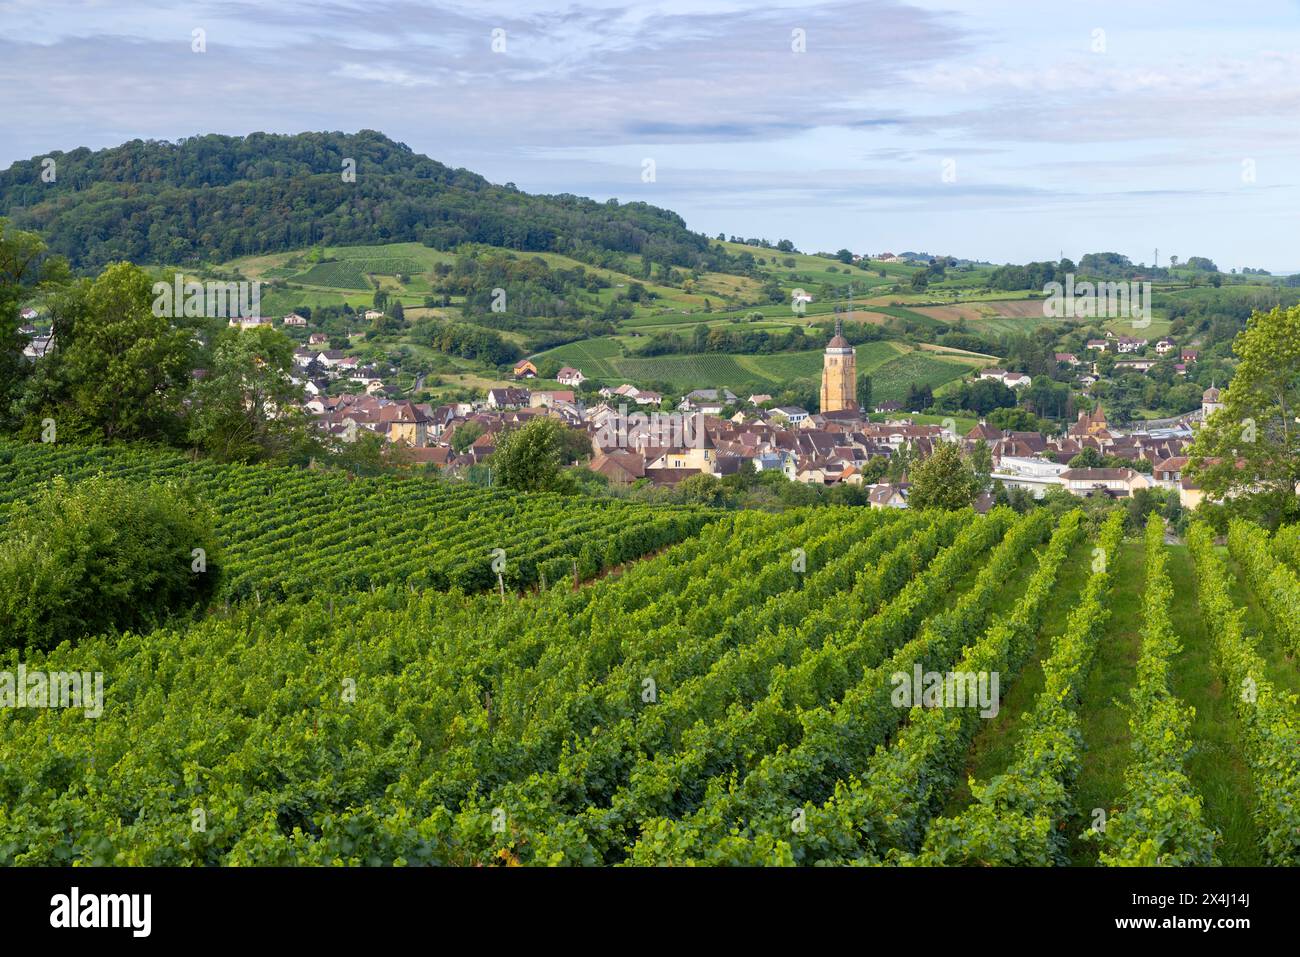 Vignobles avec ville d'Arbois, département du Jura, Franche-Comté, France Banque D'Images